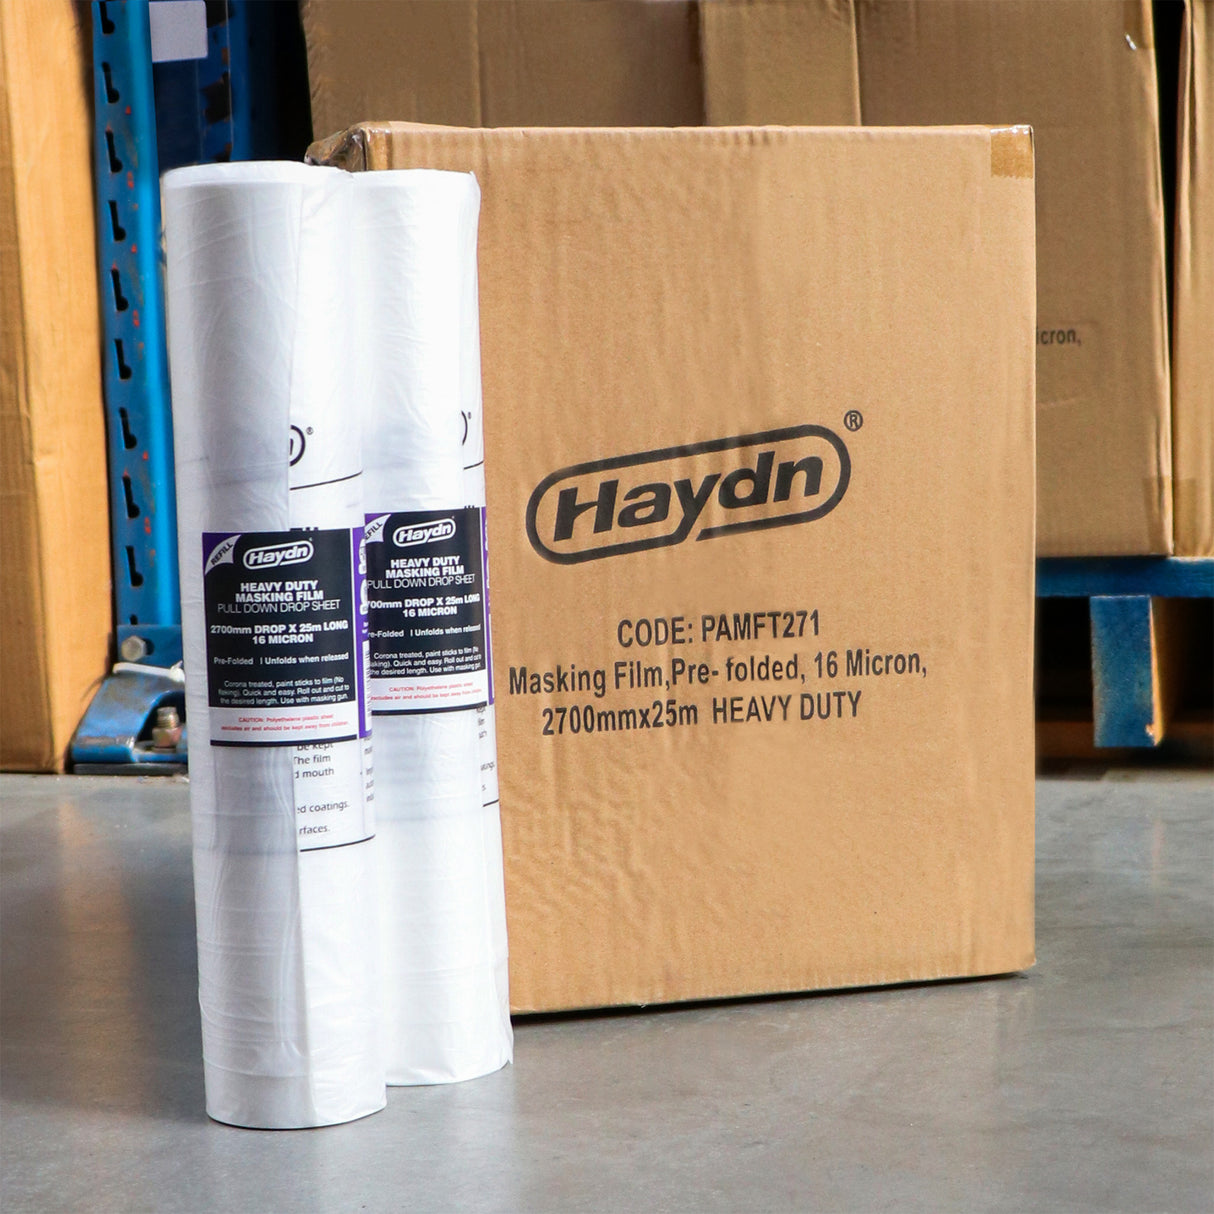 2700mm x 25m Buy A Box 12 Rolls Haydn Heavy Duty Masking Film